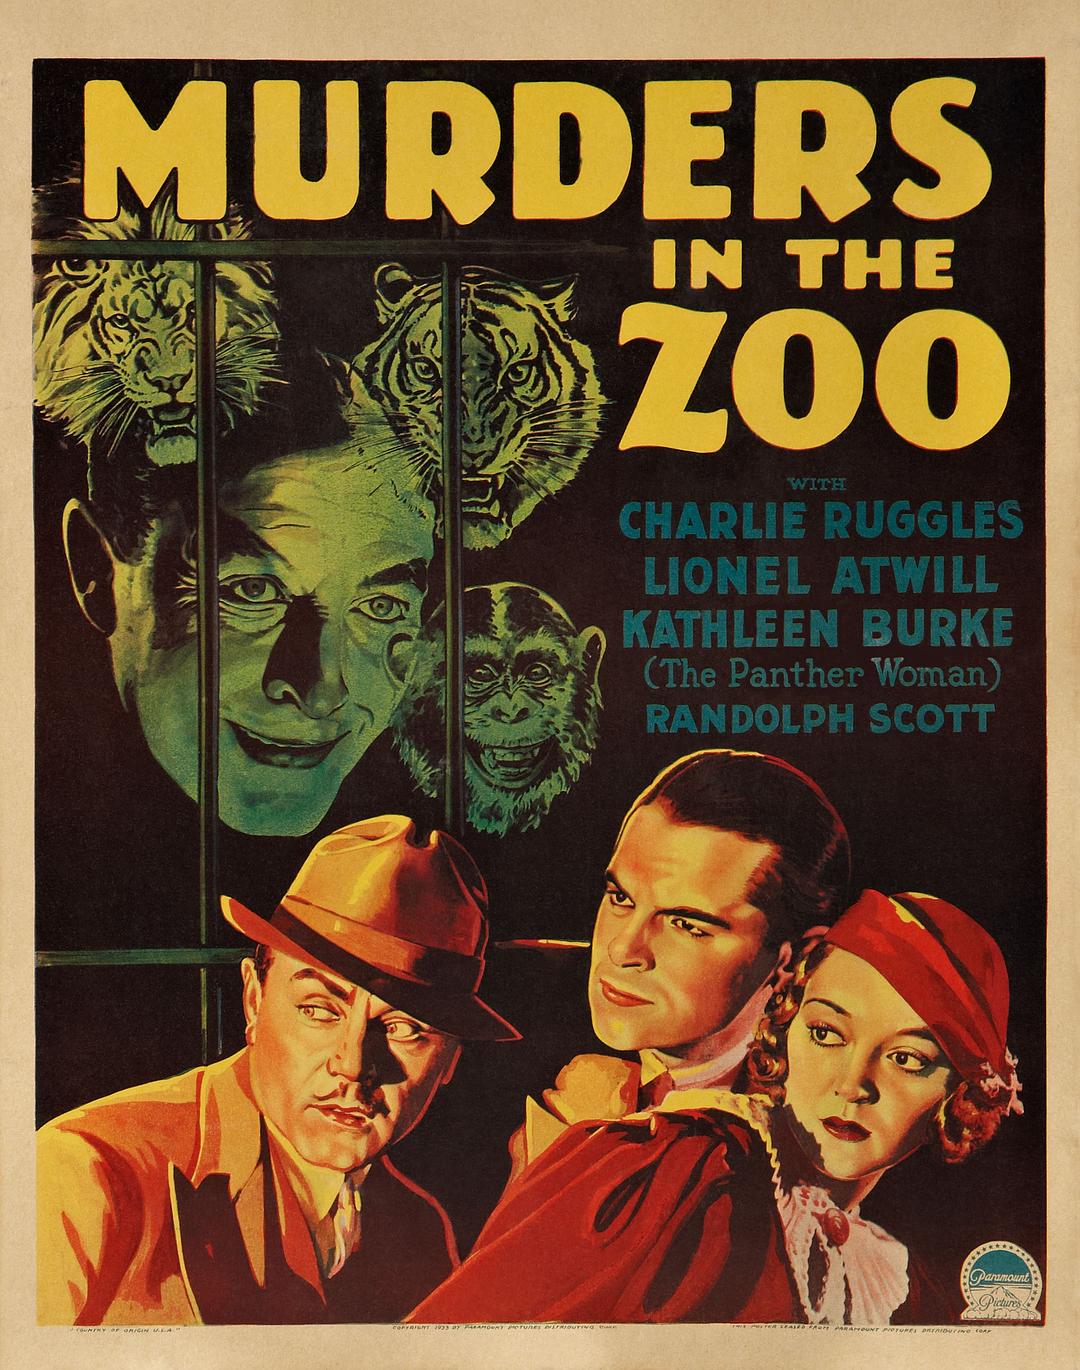 动物园凶杀案 Murders.in.the.Zoo.1933.1080p.BluRay.REMUX.AVC.DTS-HD.MA.2.0-FGT 16.01GB-1.png